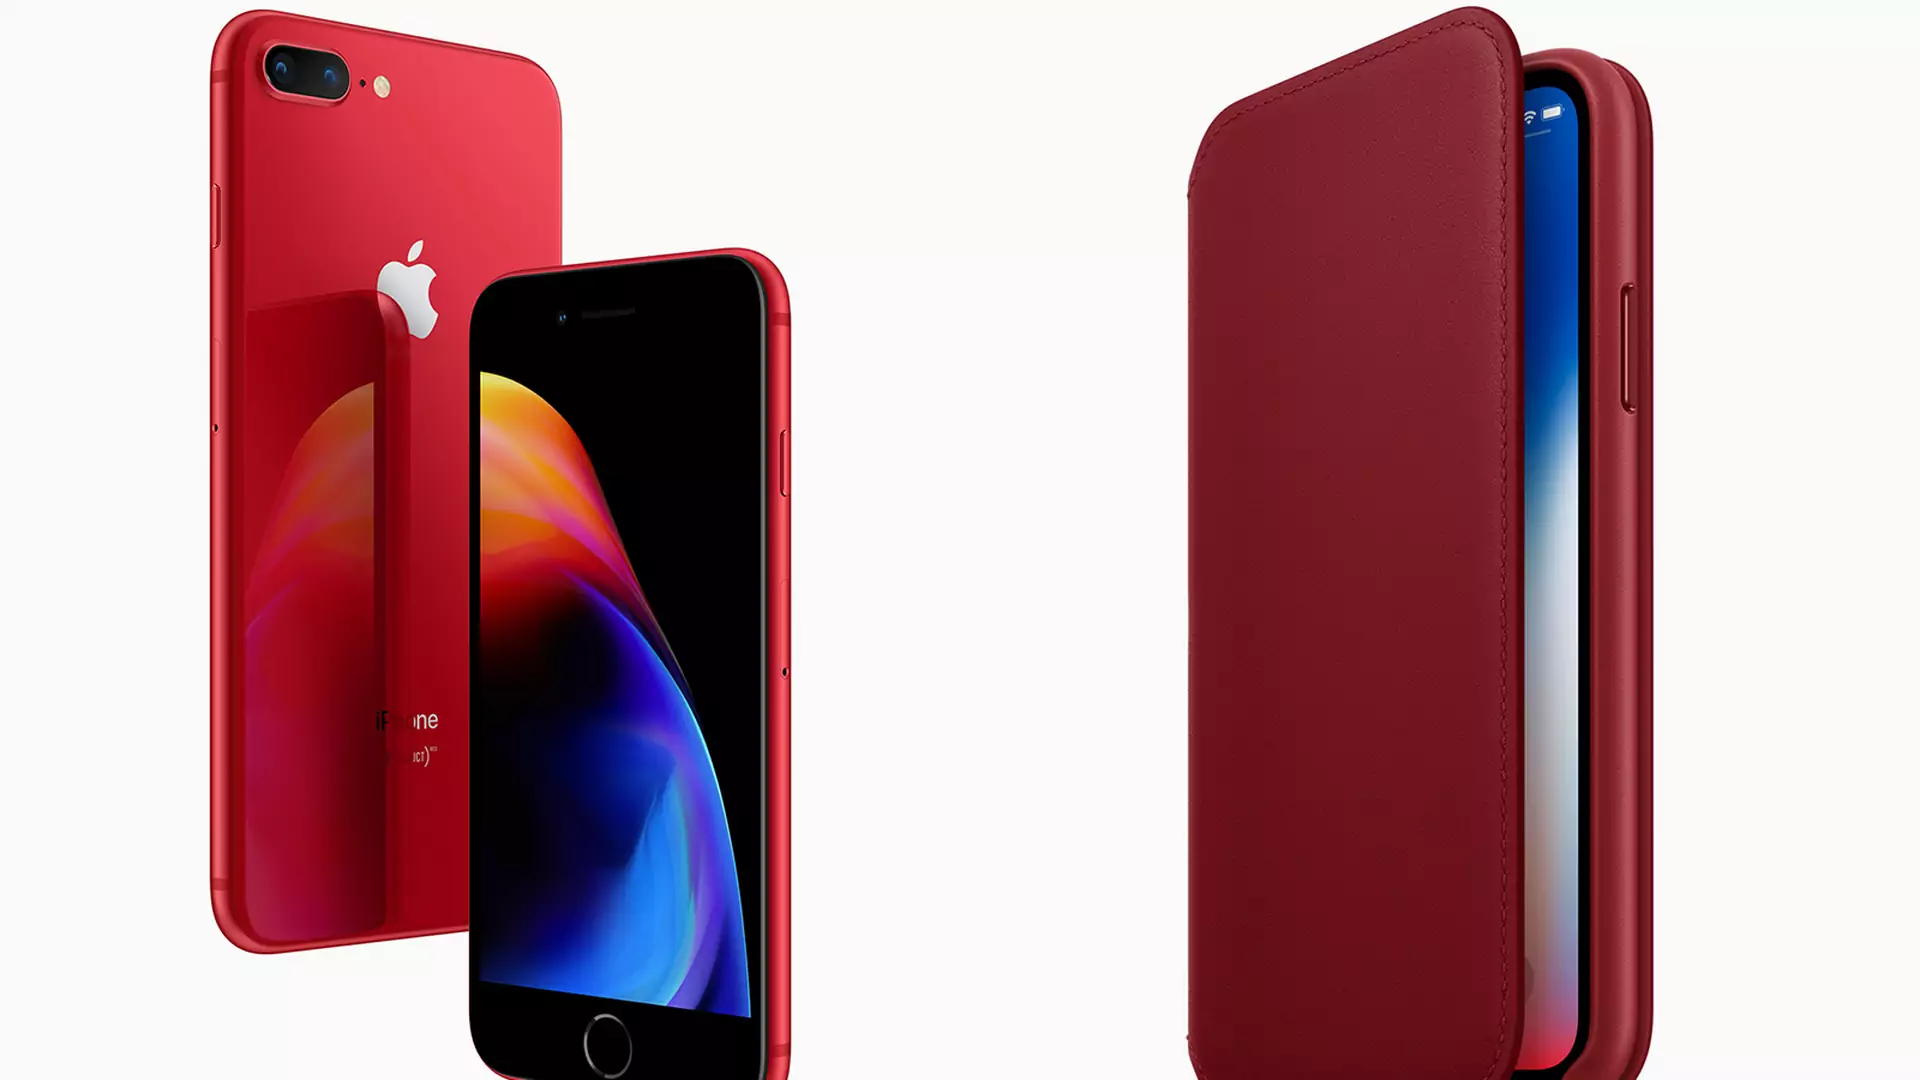 Od 10 kwietnia zamówisz iPhone 8 w kolorze karmazynowej czerwieni